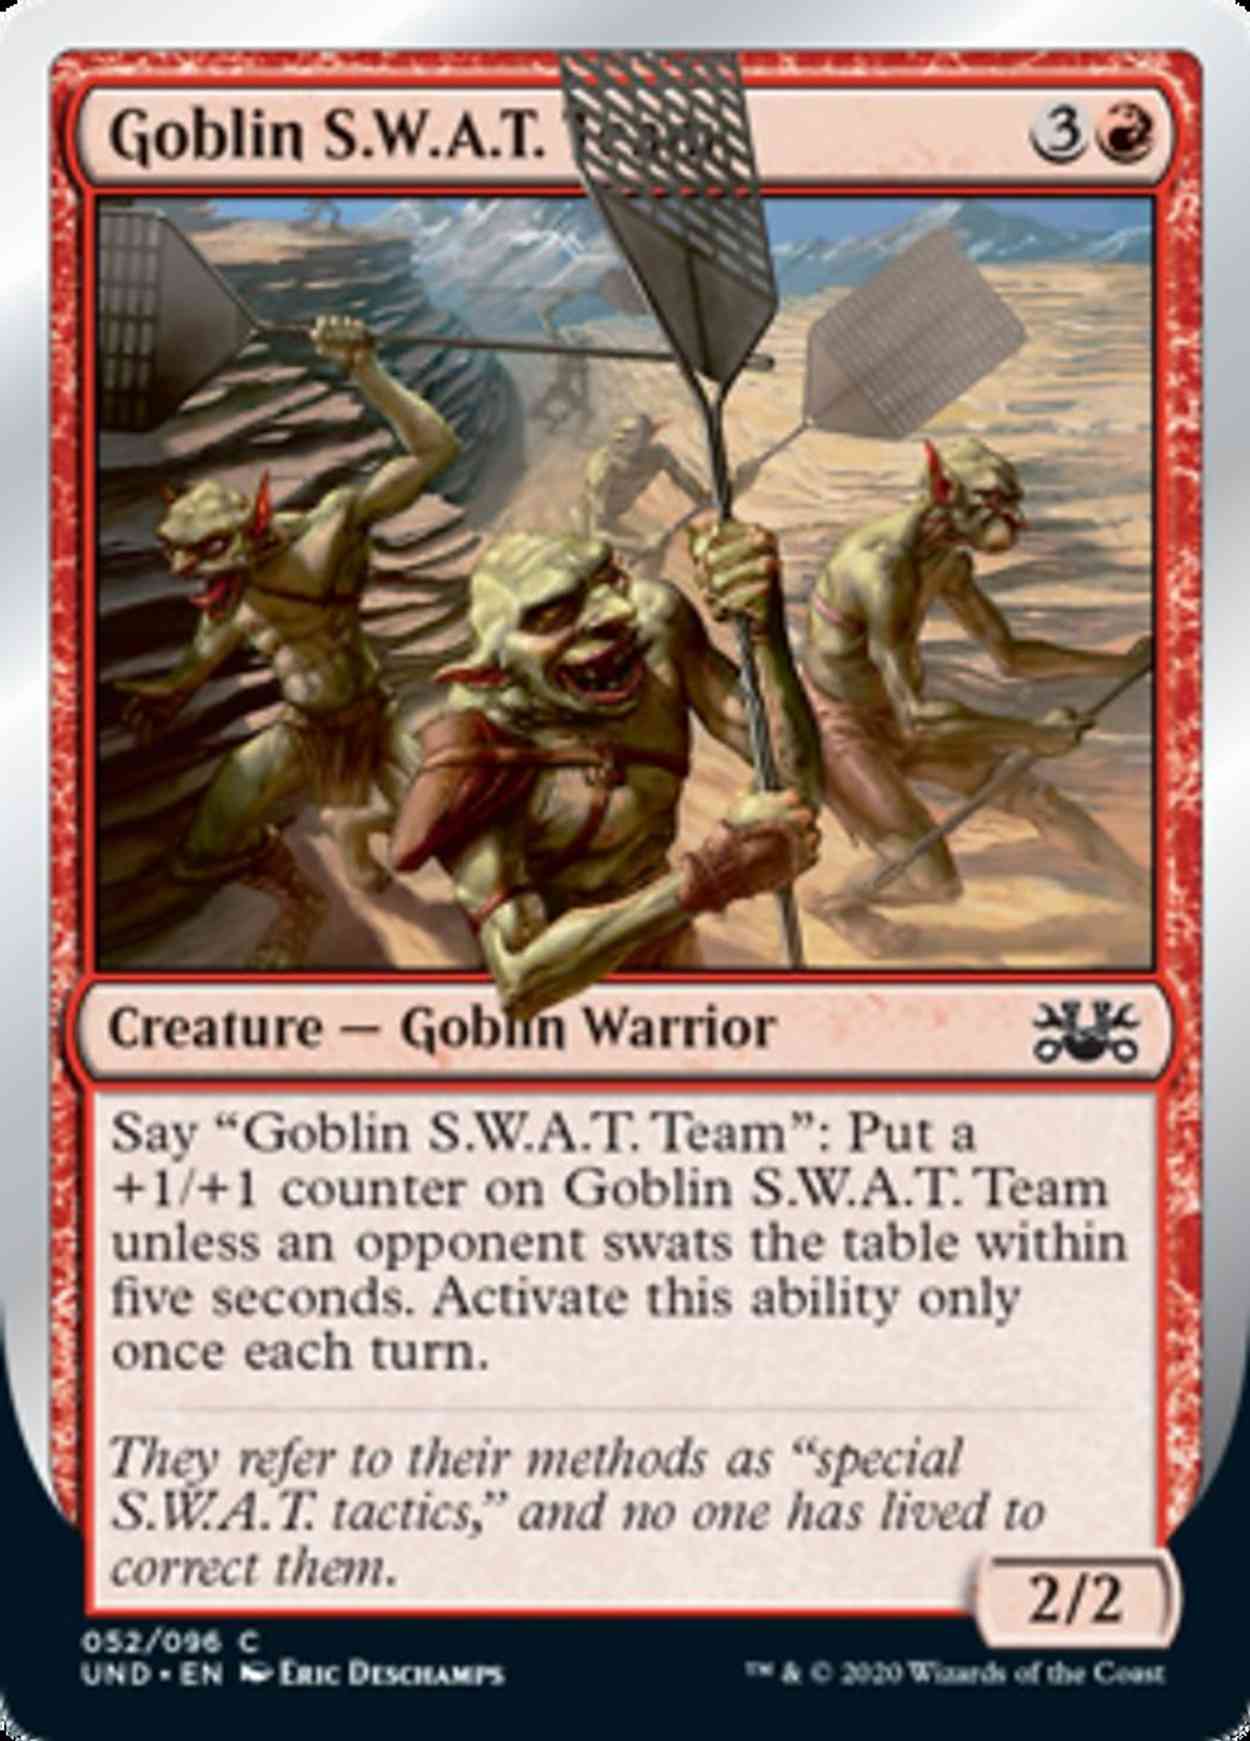 Goblin S.W.A.T. Team magic card front